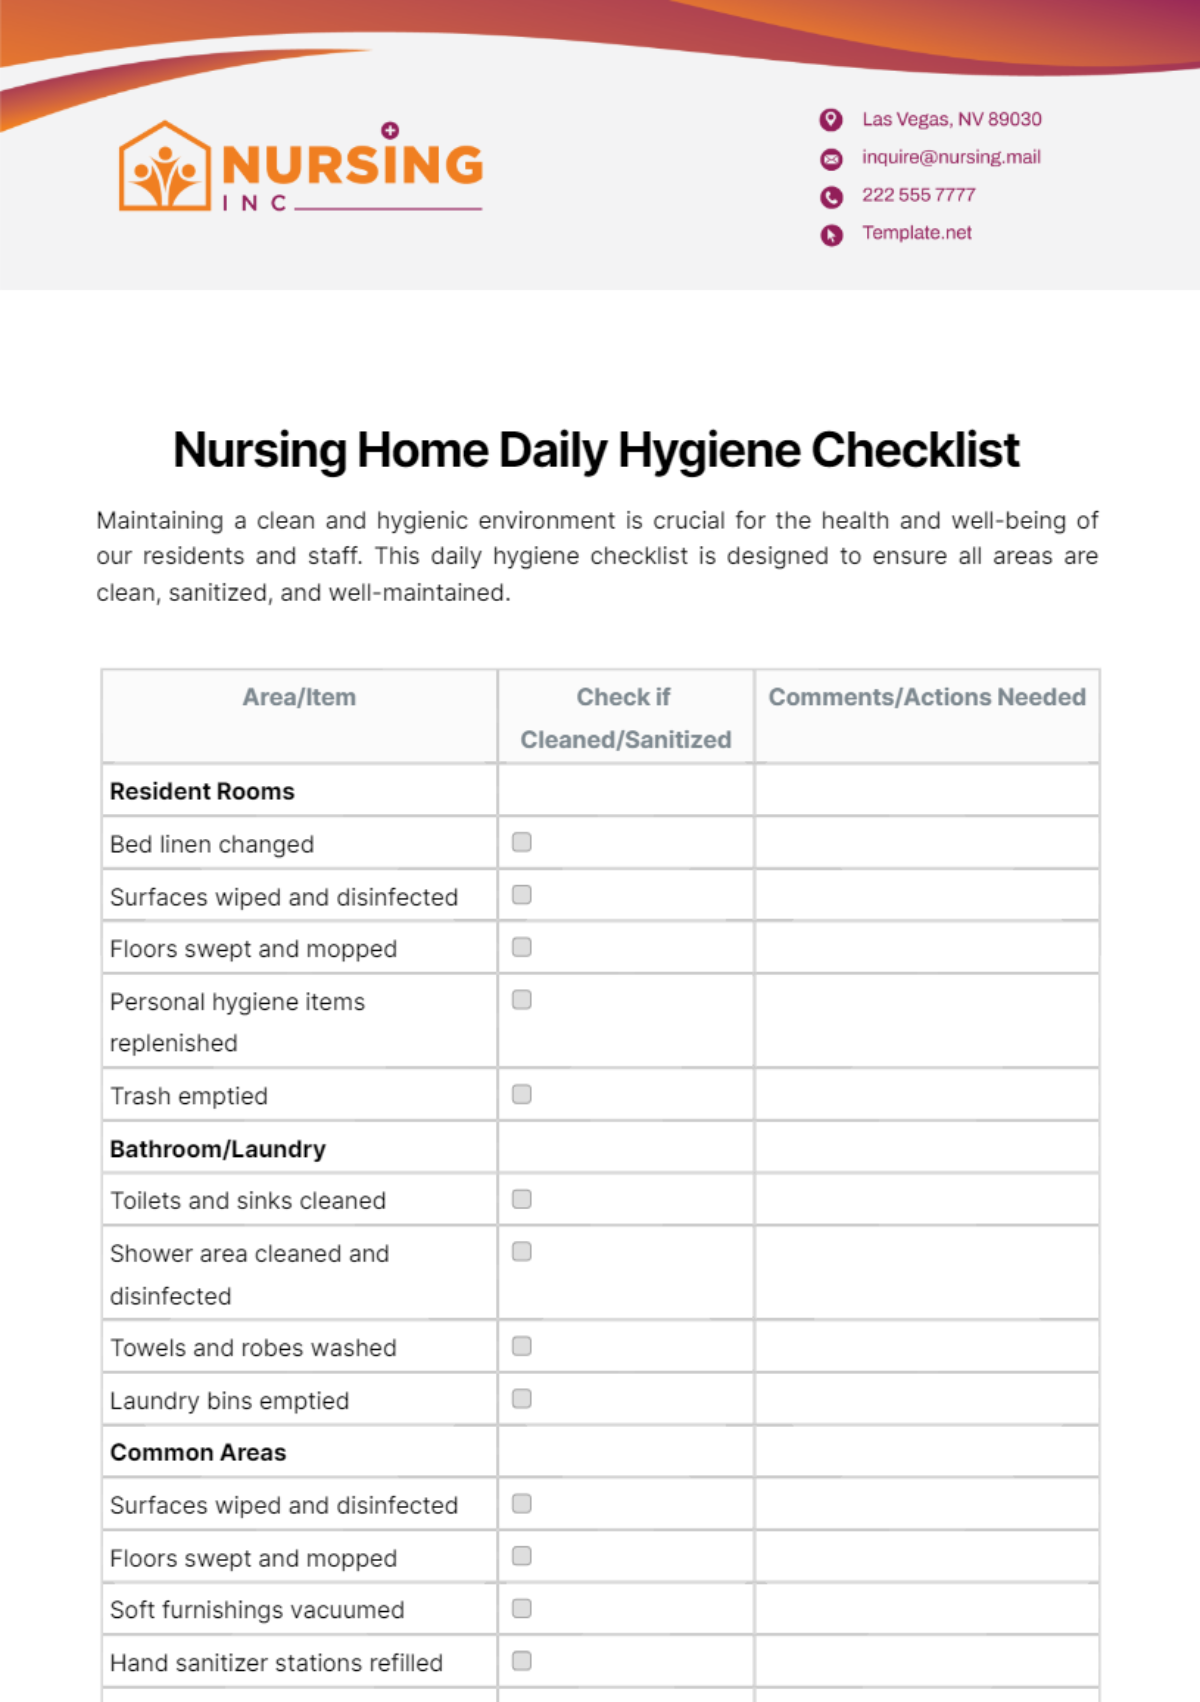 Nursing Home Daily Hygiene Checklist Template